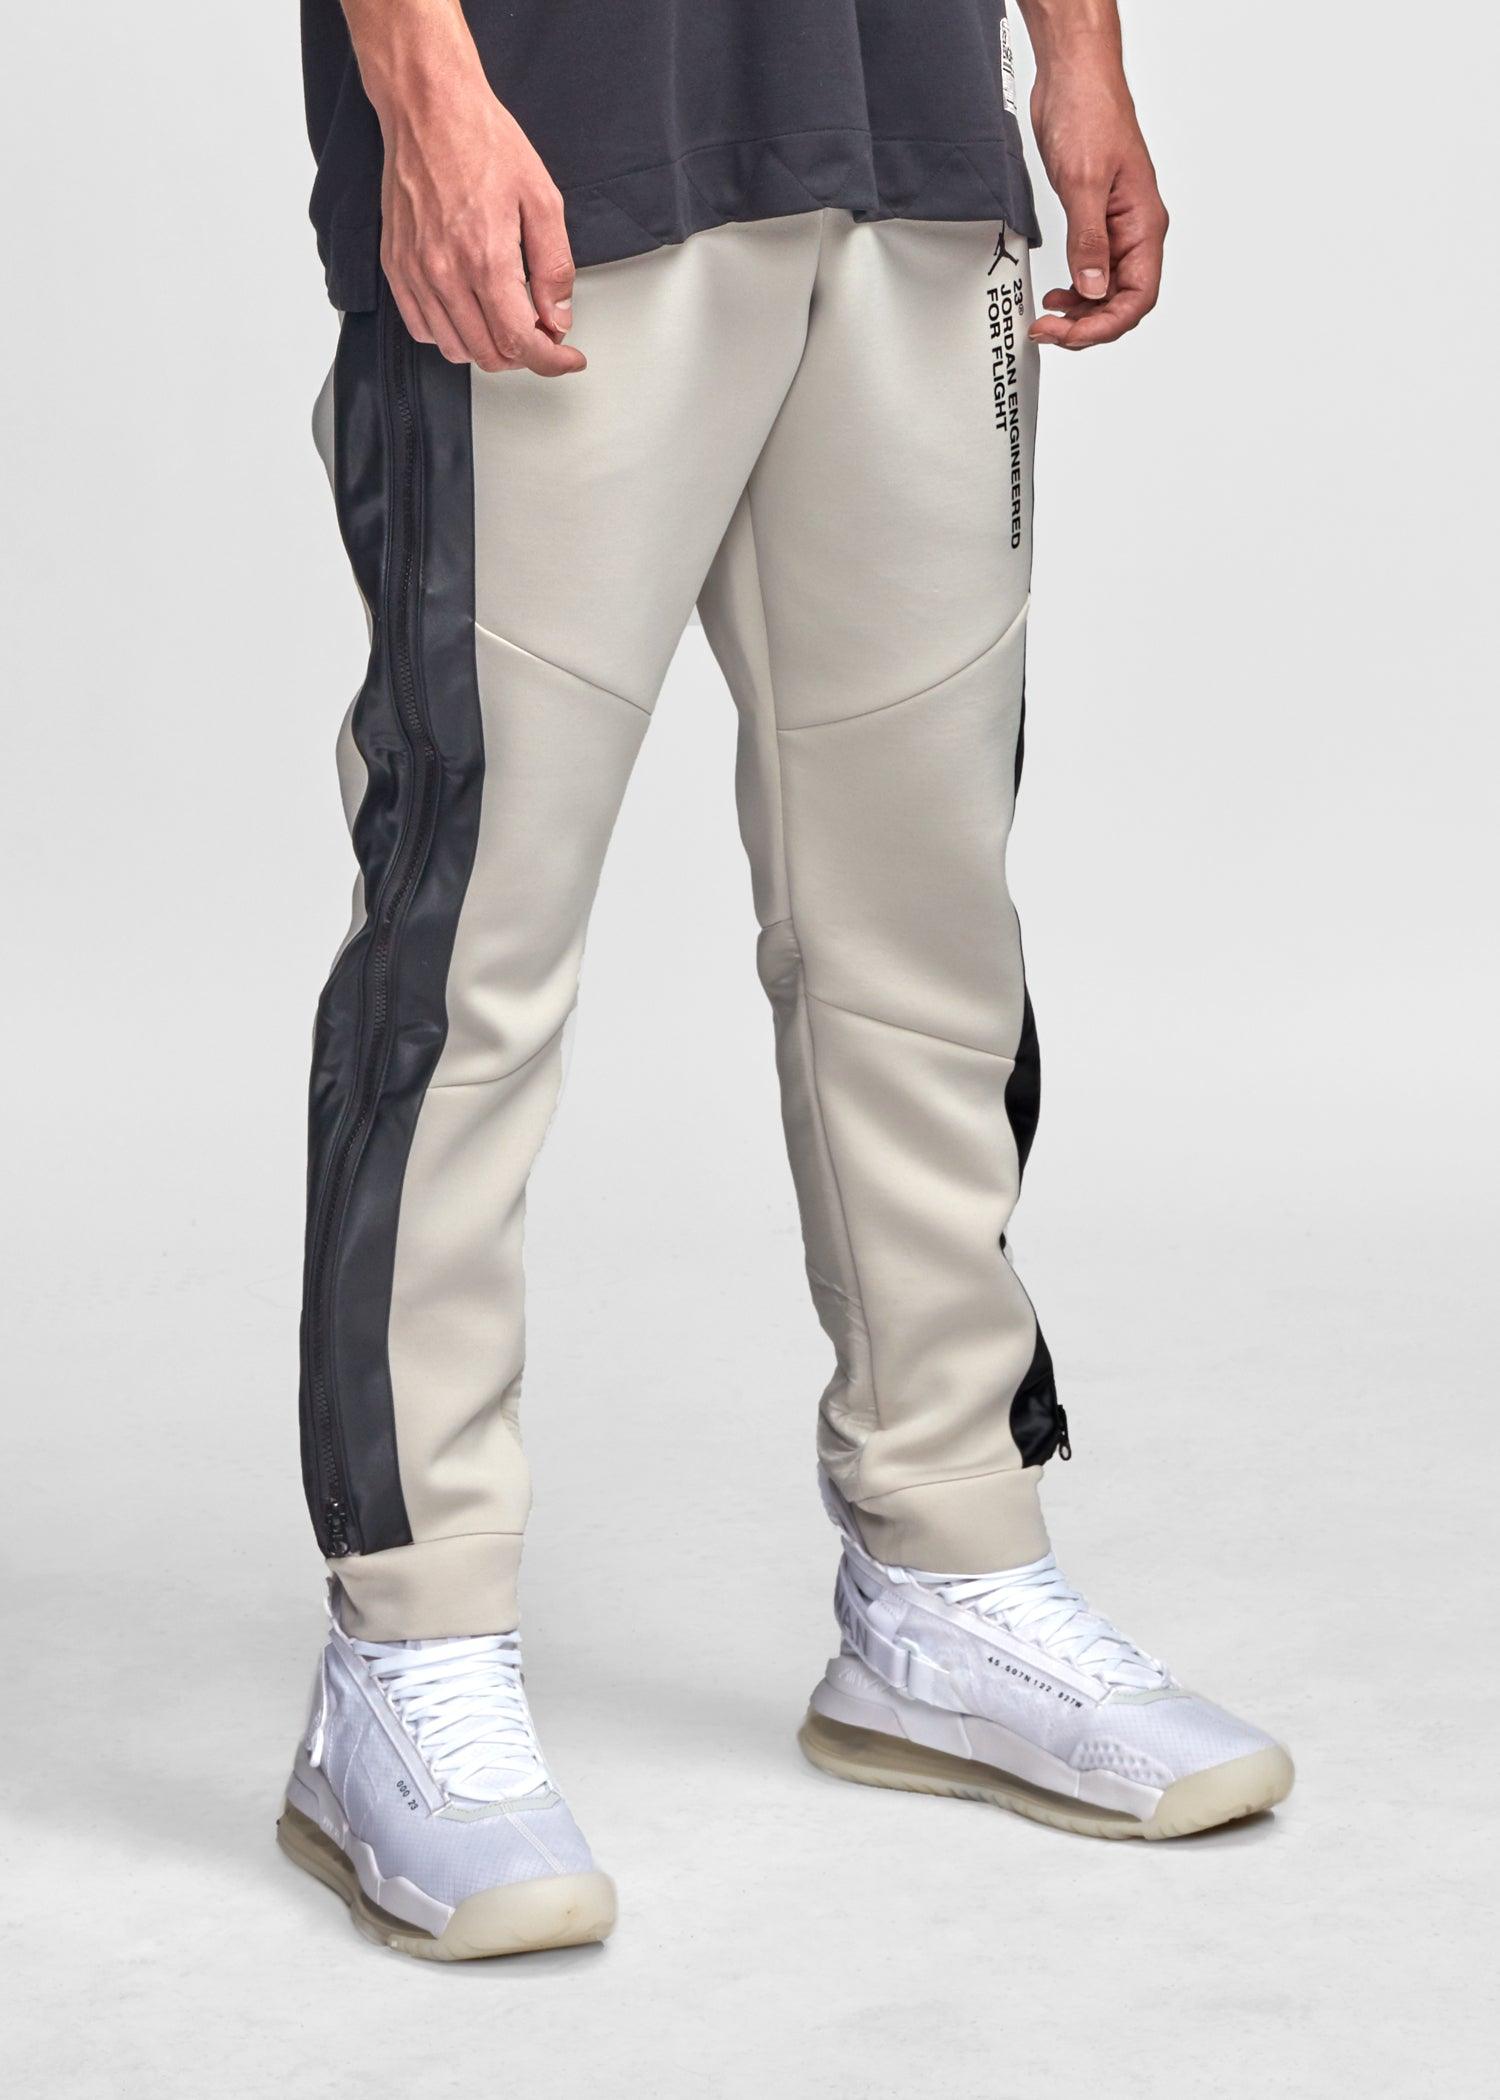 khaki pants with jordans